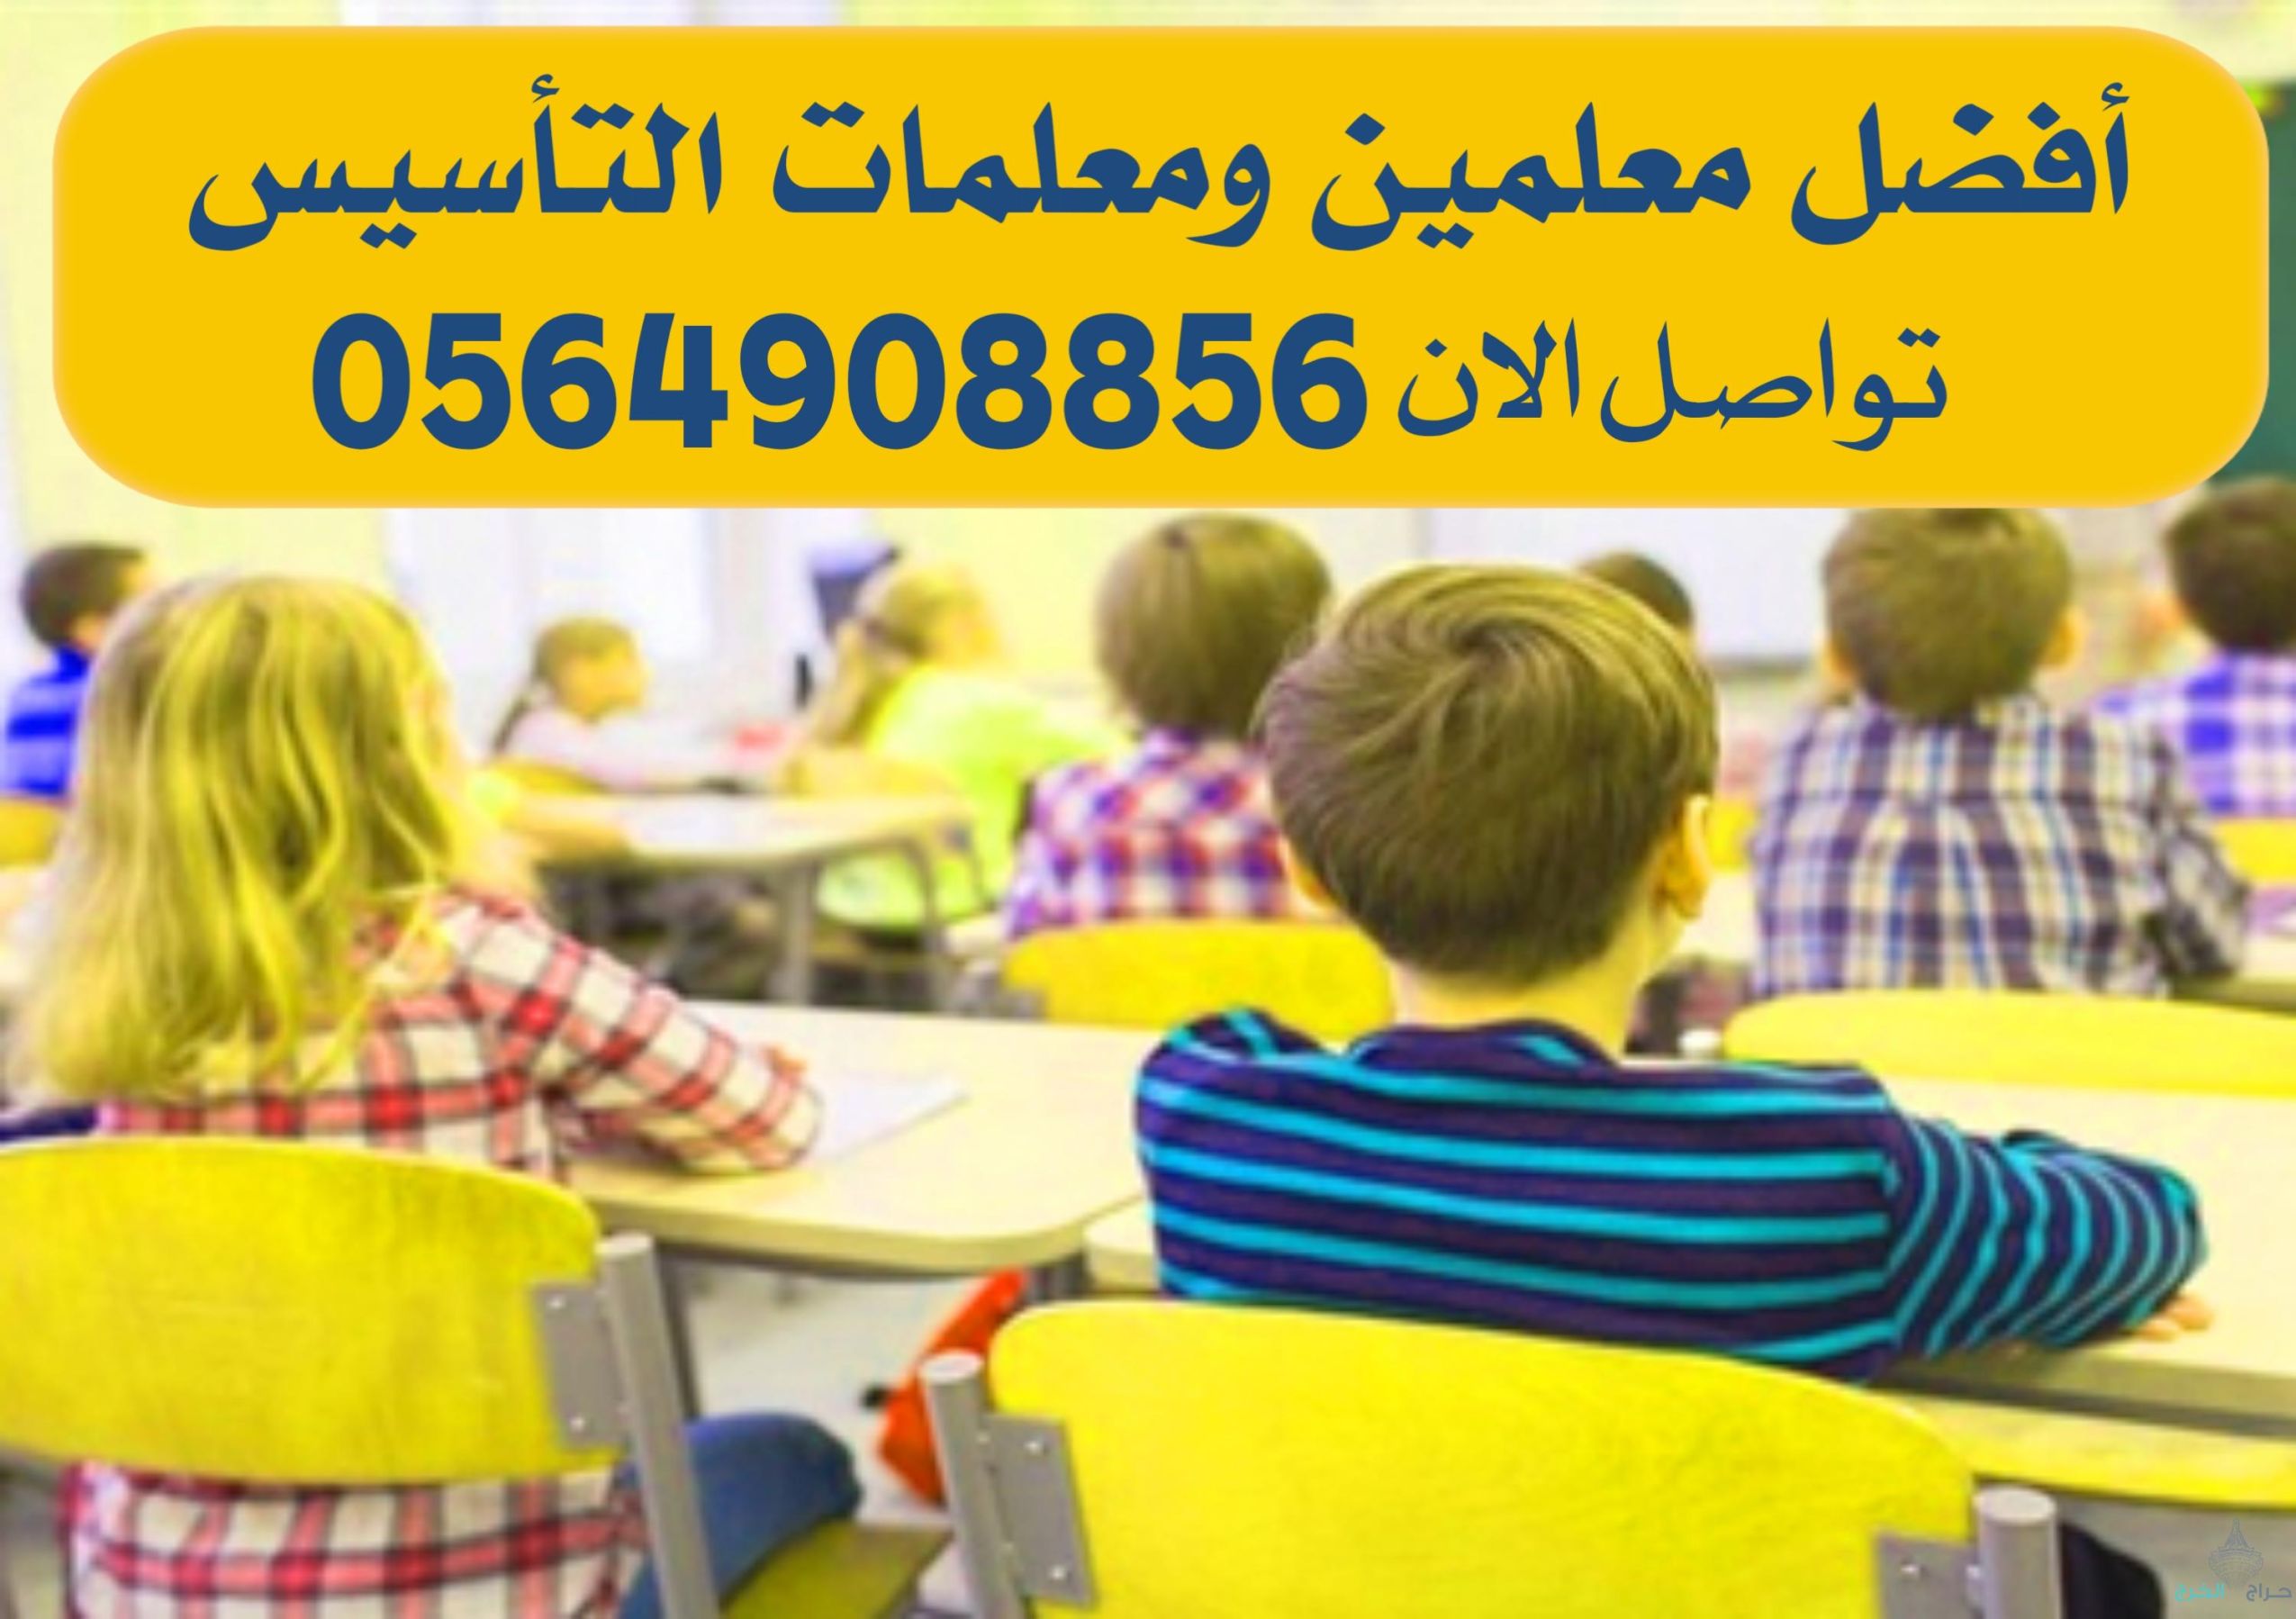 ارقام مدرسات ومعلمات في الرياض